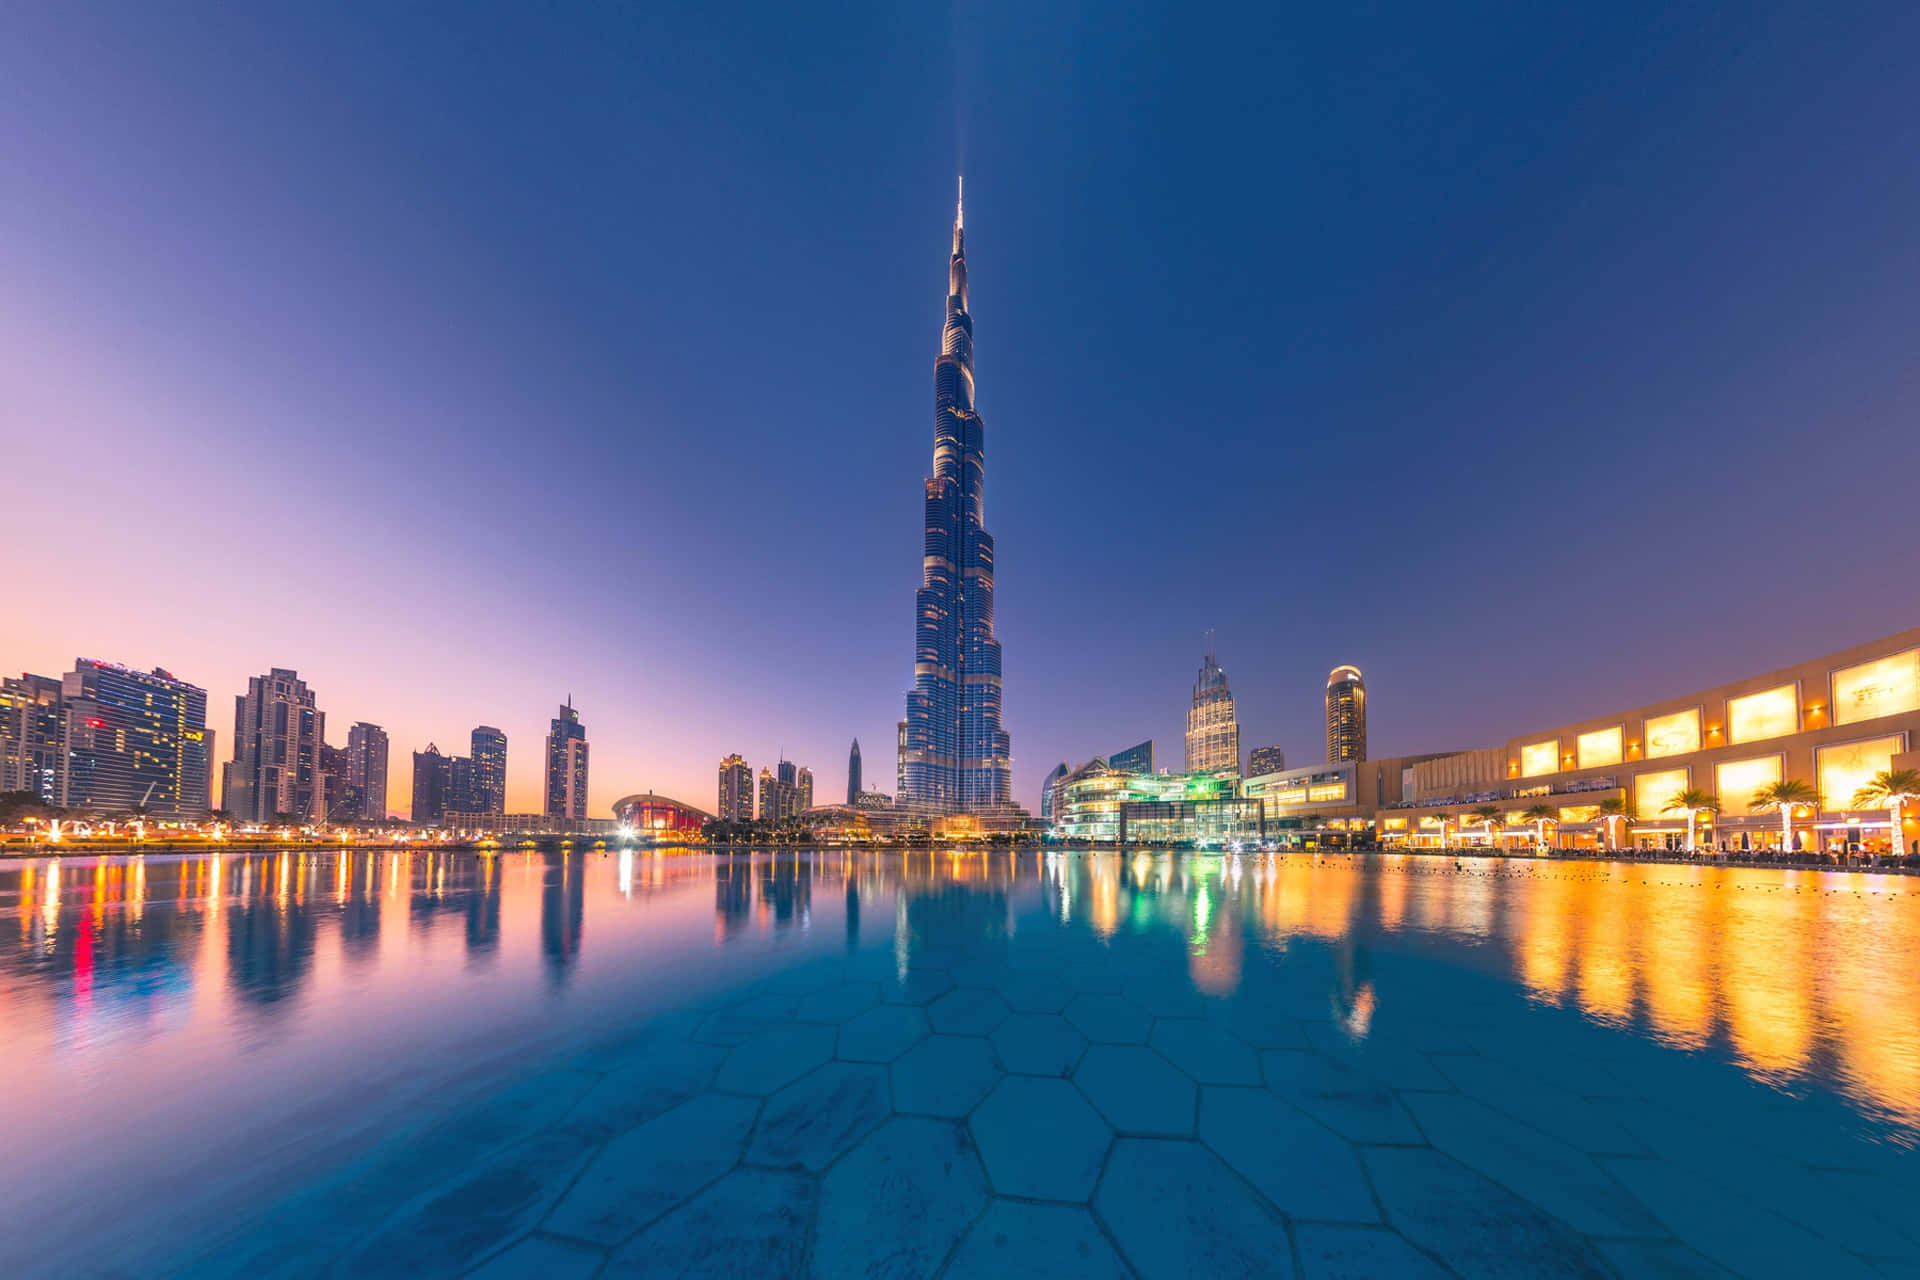 Ilmaestoso Burj Khalifa Si Erge Alto Contro Il Vivido Cielo Blu.